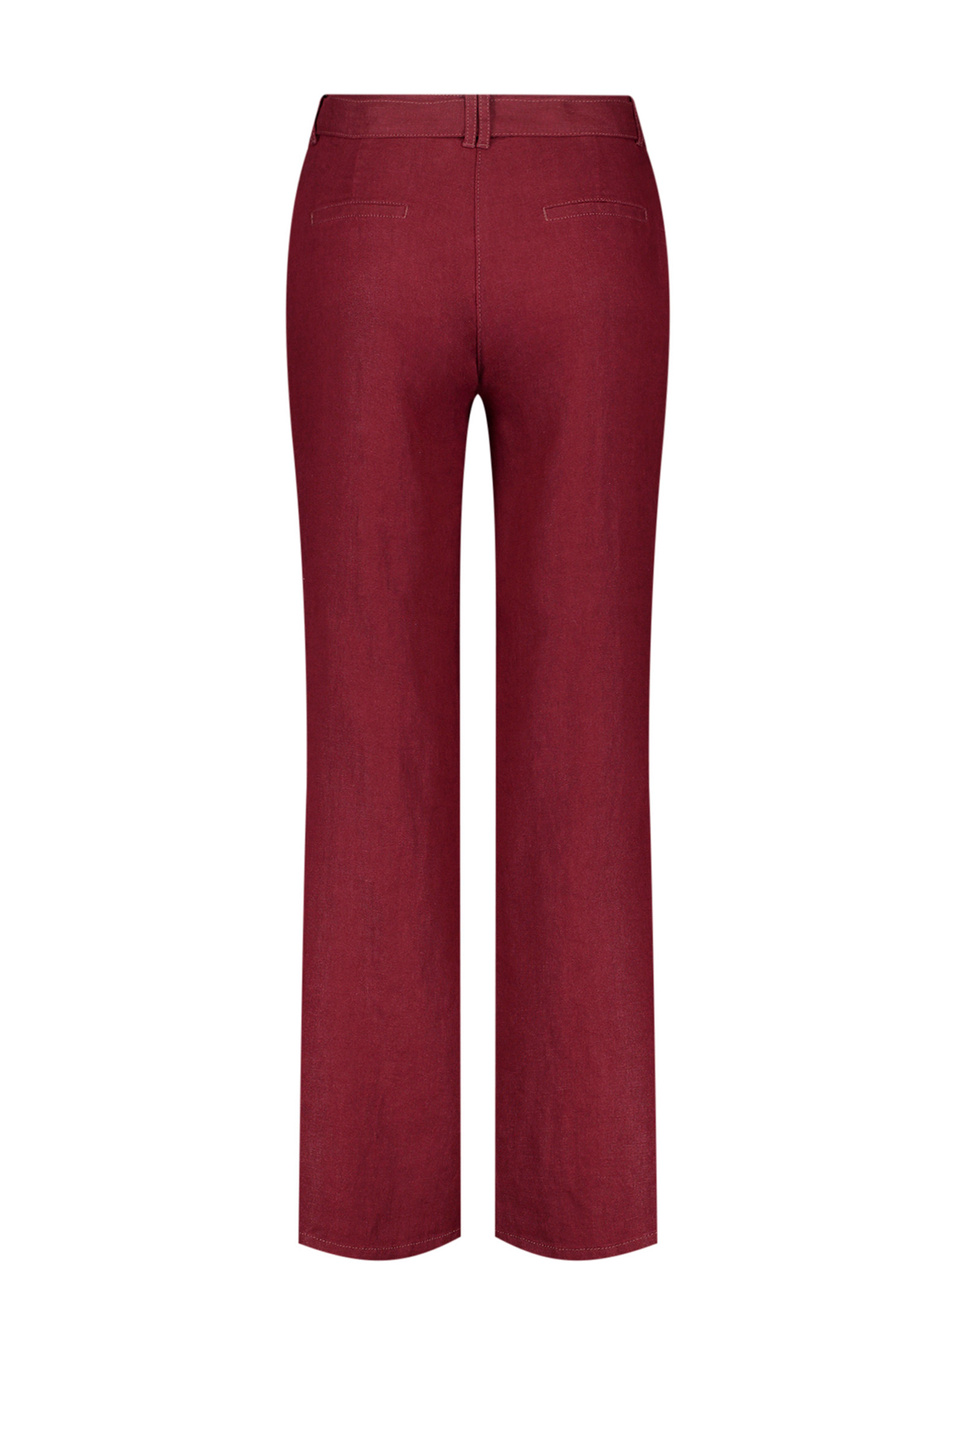 Женский Gerry Weber Льняные брюки с поясом (цвет ), артикул 622085-66225 -Classic Fit | Фото 2